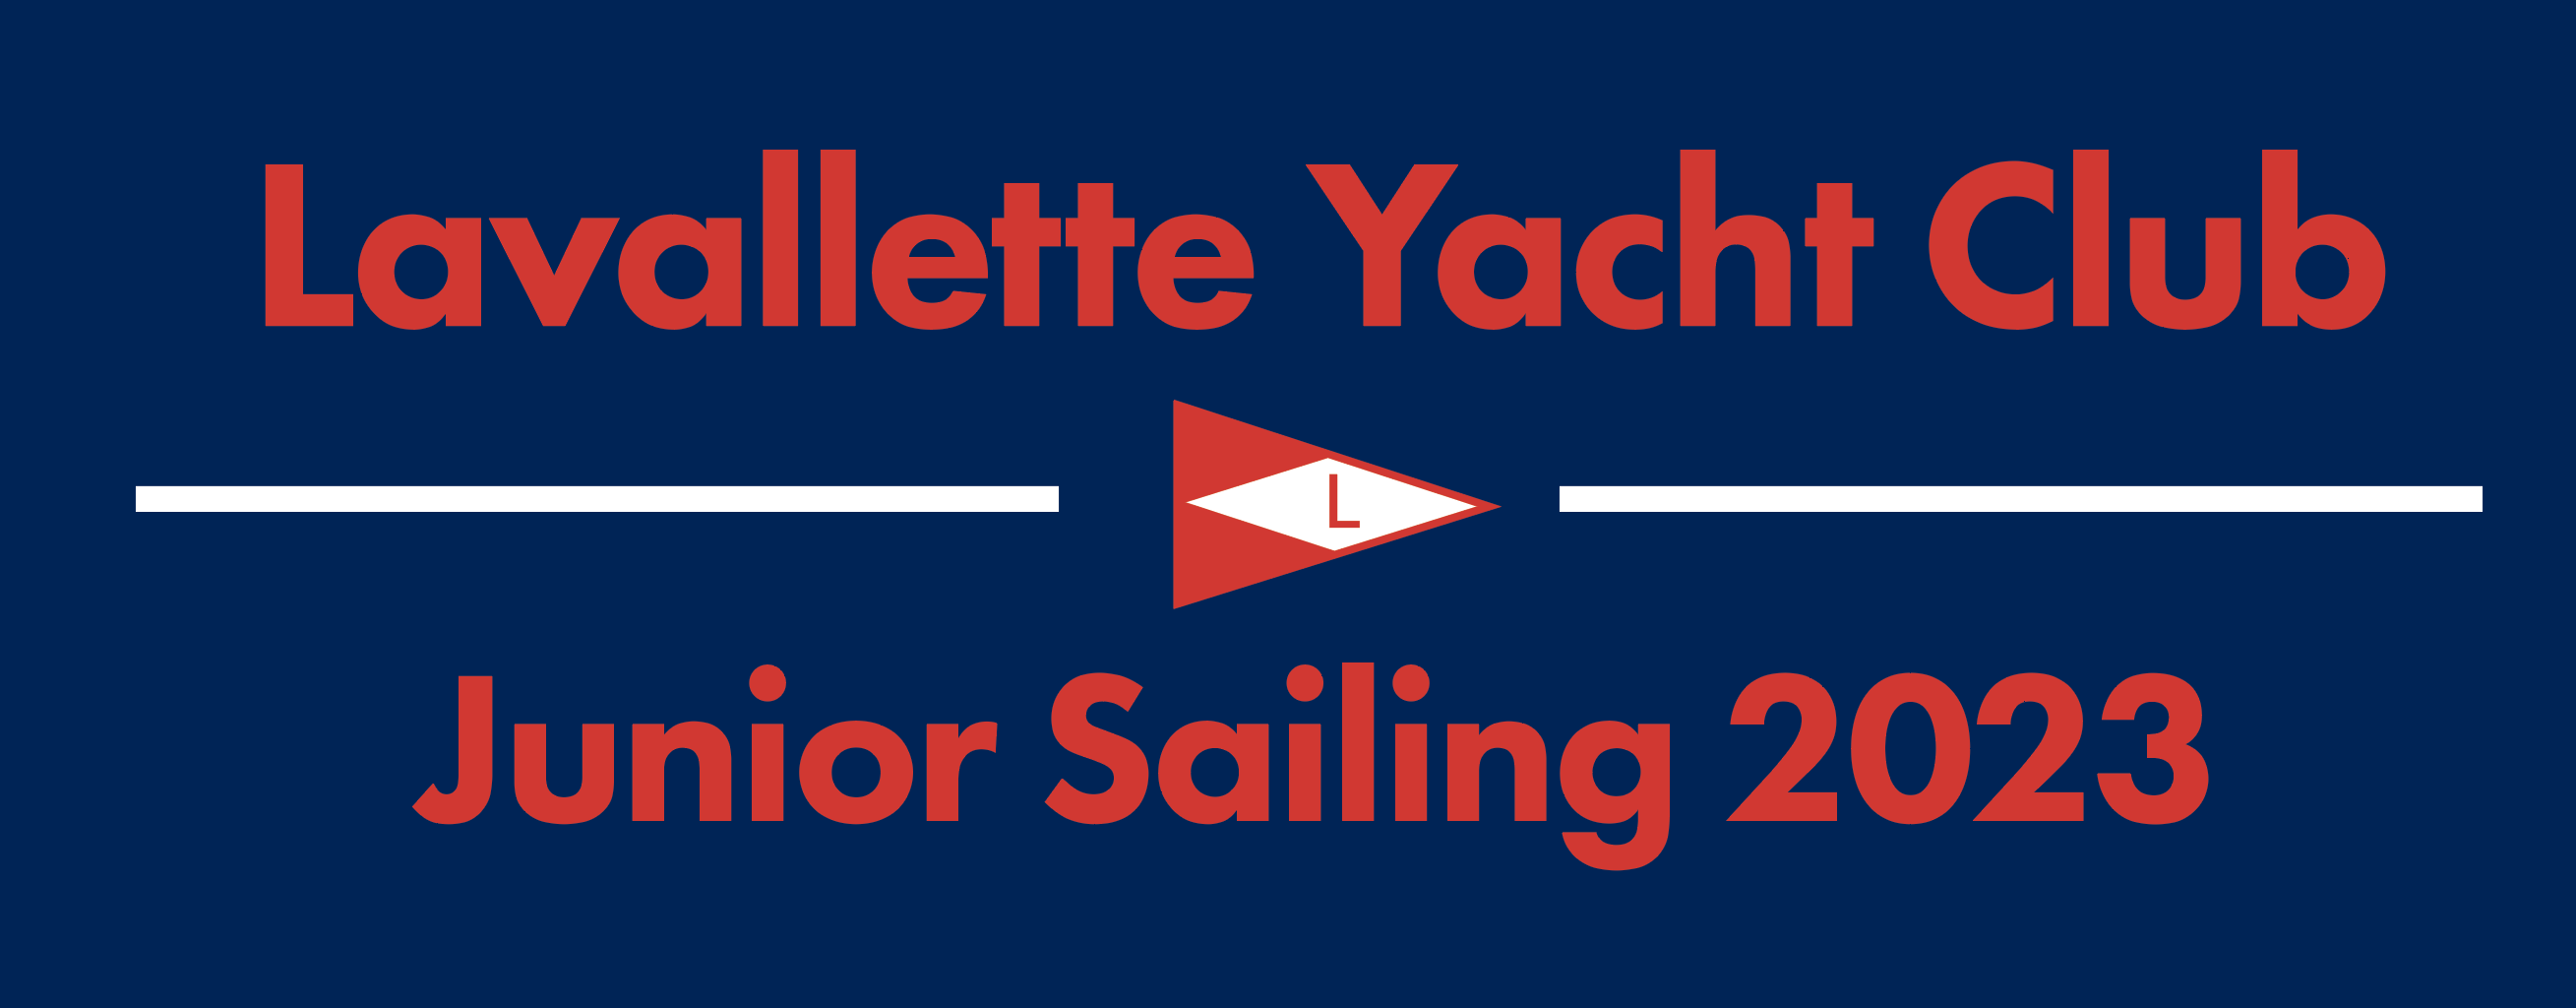 lavallette yacht club app